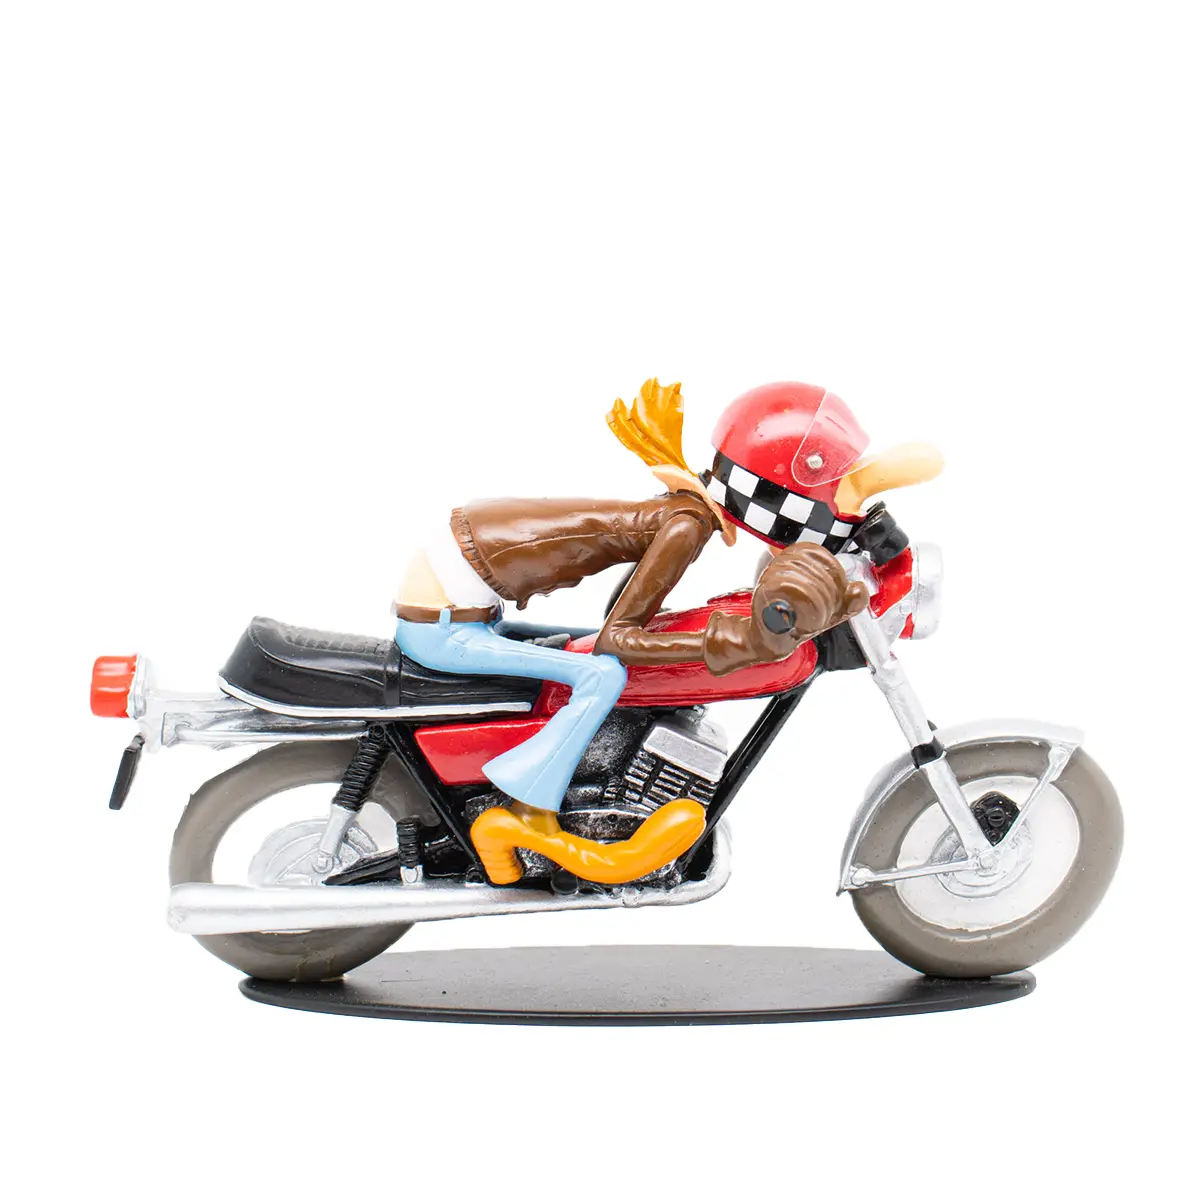 Figurine en résine Joe Bar Team moto YAMAHA 350 rdlc